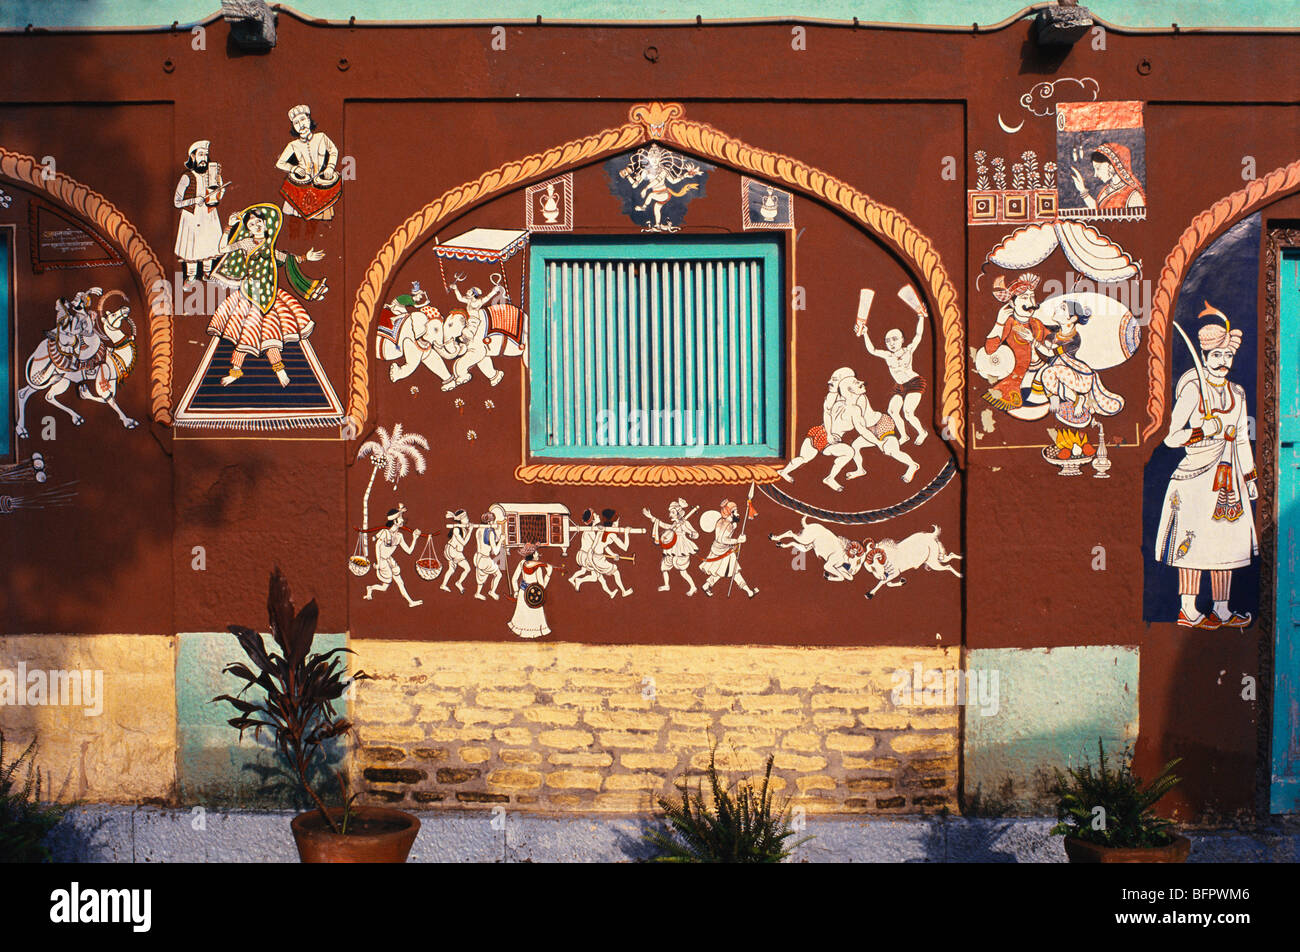 AAD 66520 : Peshwa style wall painting ; Parvati Complex ; Pune ; Maharashtra ; India Stock Photo